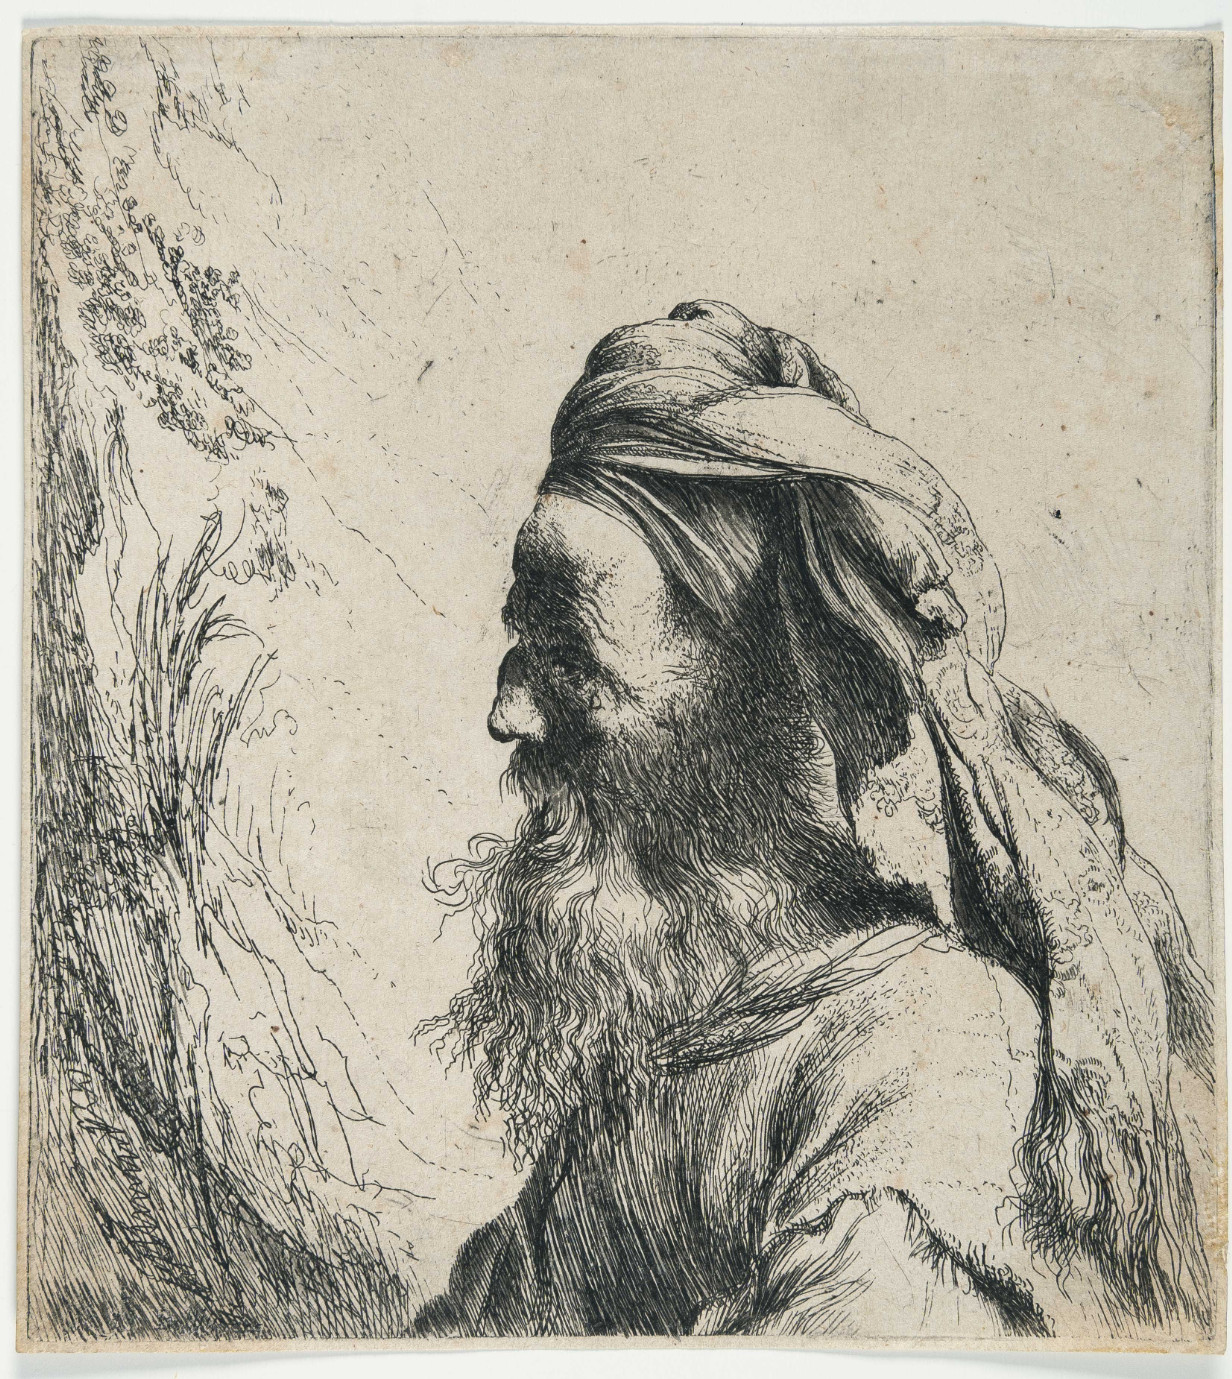 Jan Lievens (1607-1674), Portrait en buste d’un homme oriental barbu portant un
turban, vers 1630, eau-forte sur papier vergé, collection de l’État de Vaud